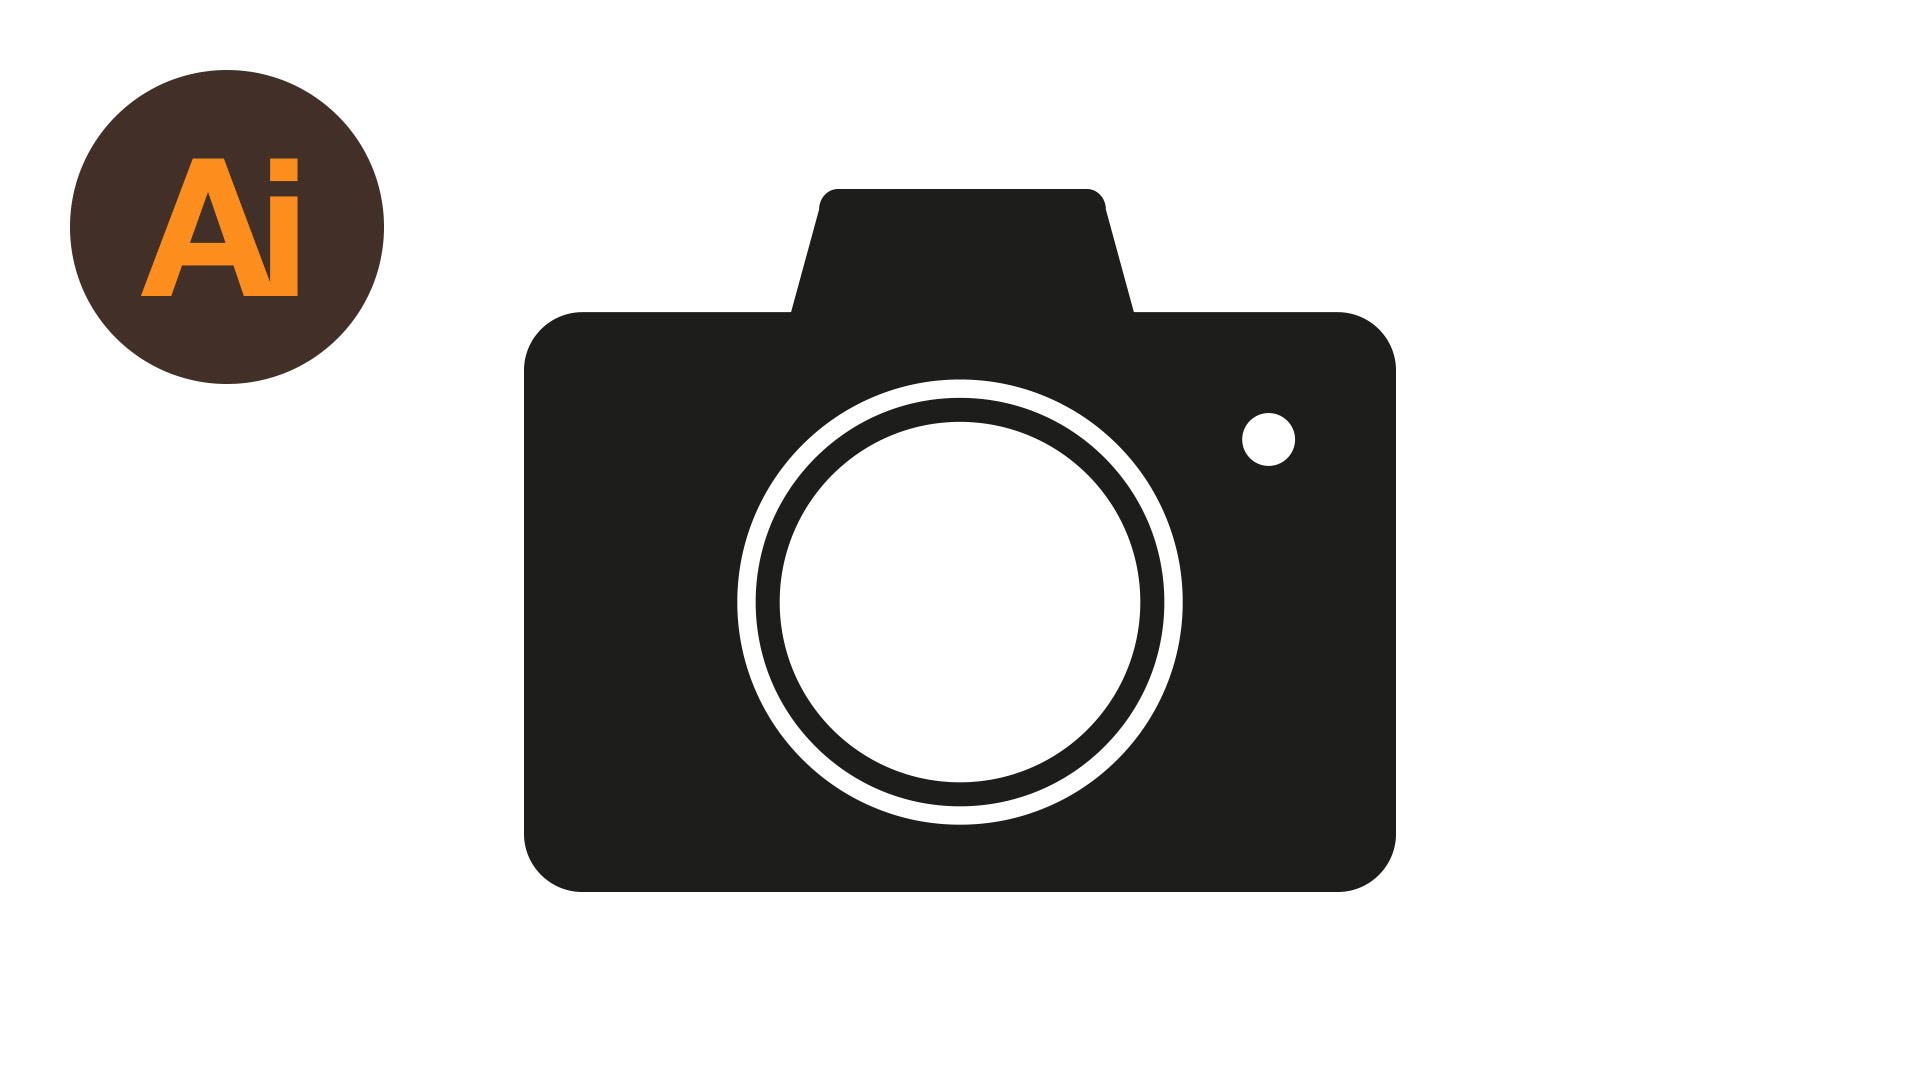 Camera Icon Royalty Free Vector Image - VectorStock